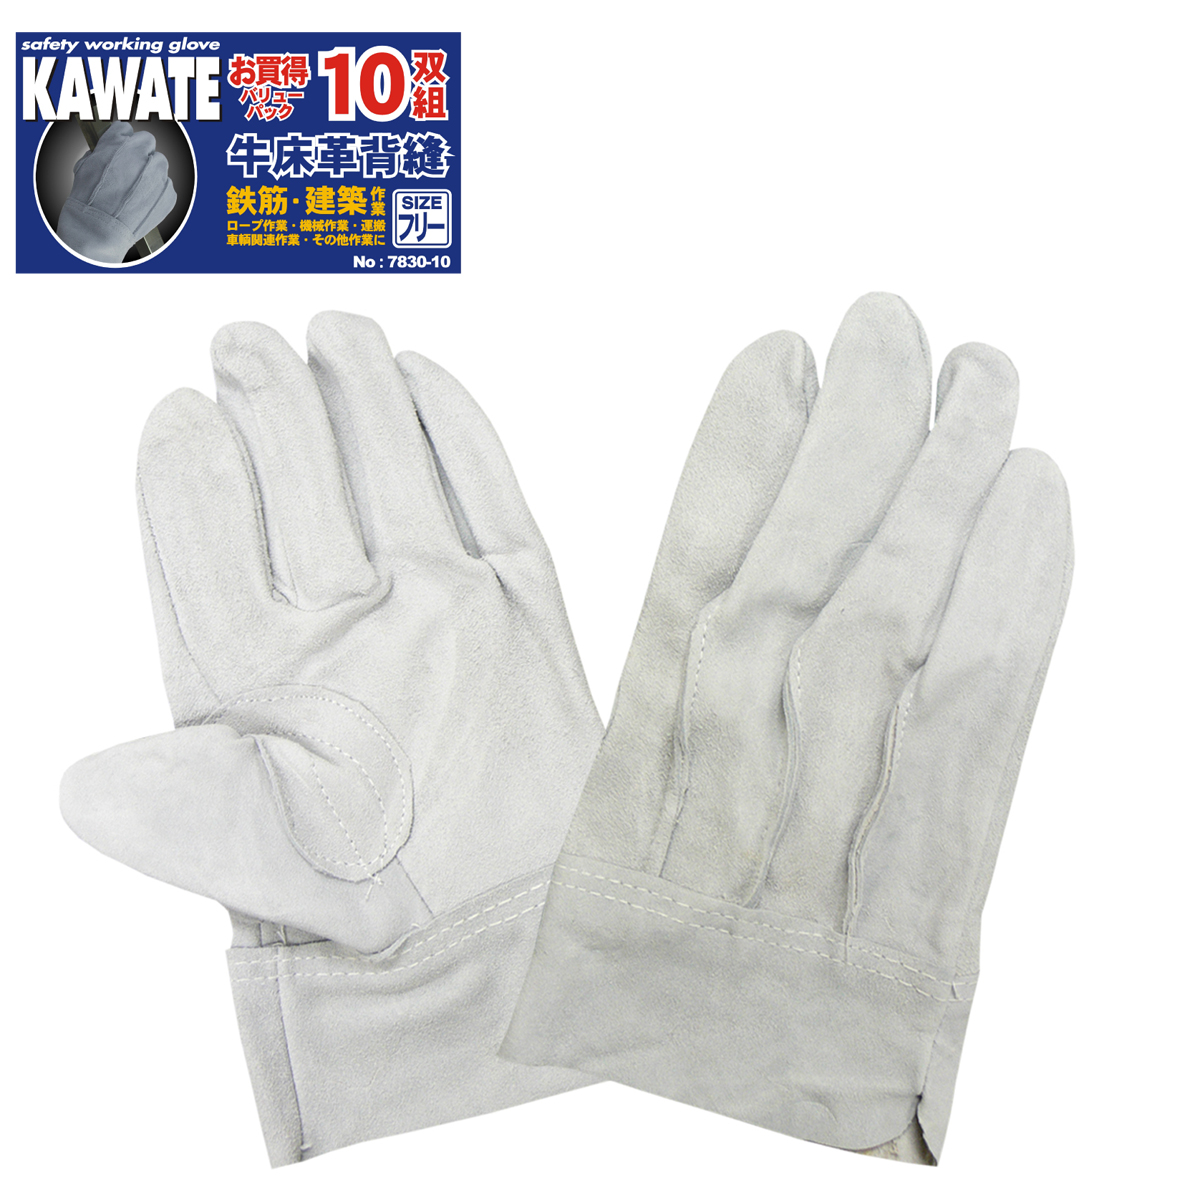 牛床革 カワテ 外縫い 10双組 #7830-10P ACE 作業用革手袋・作業用手袋のエース